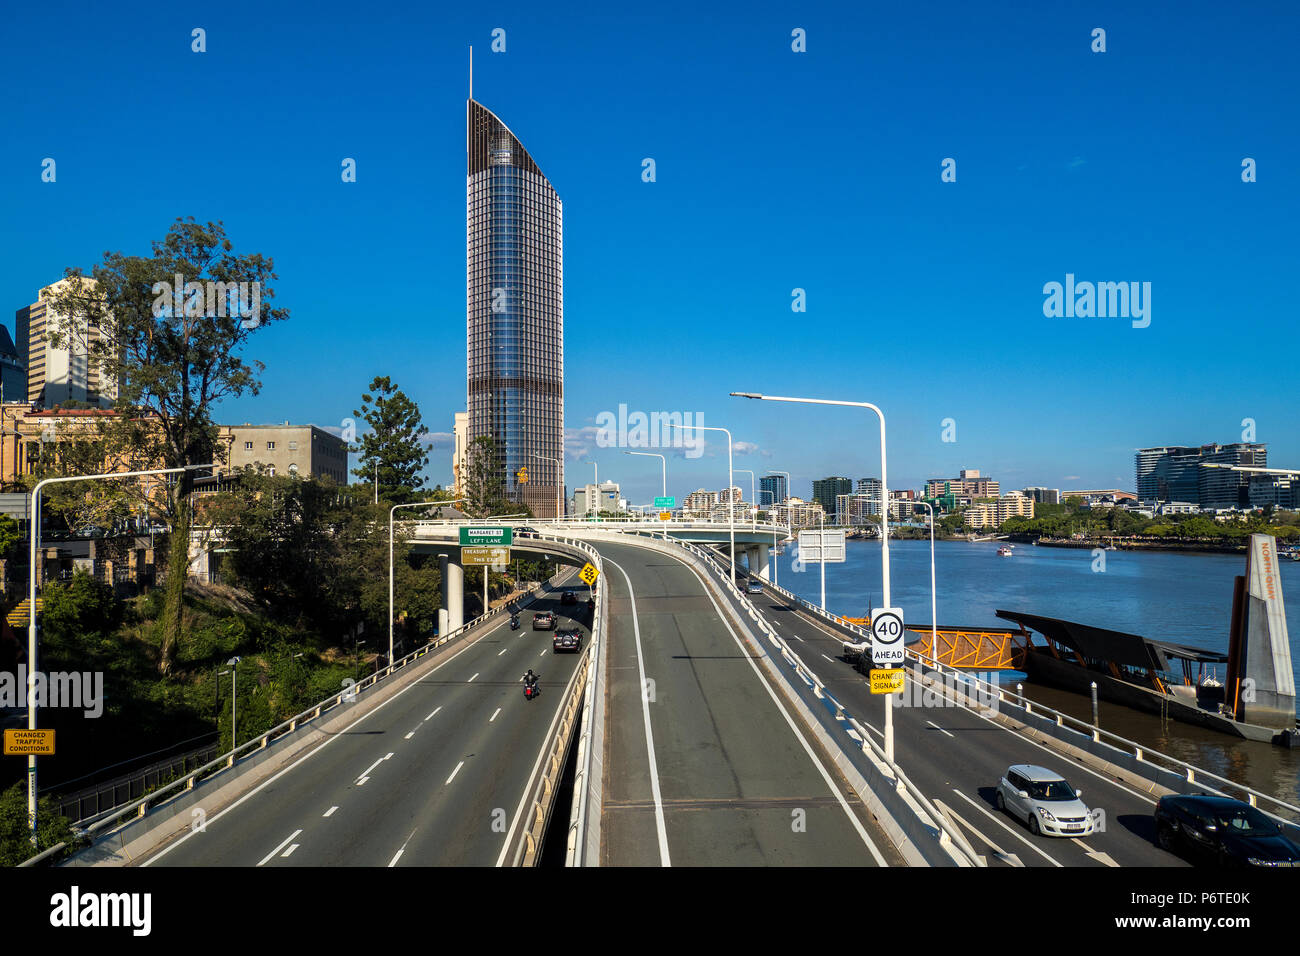 Brisbane City images Stock Photo